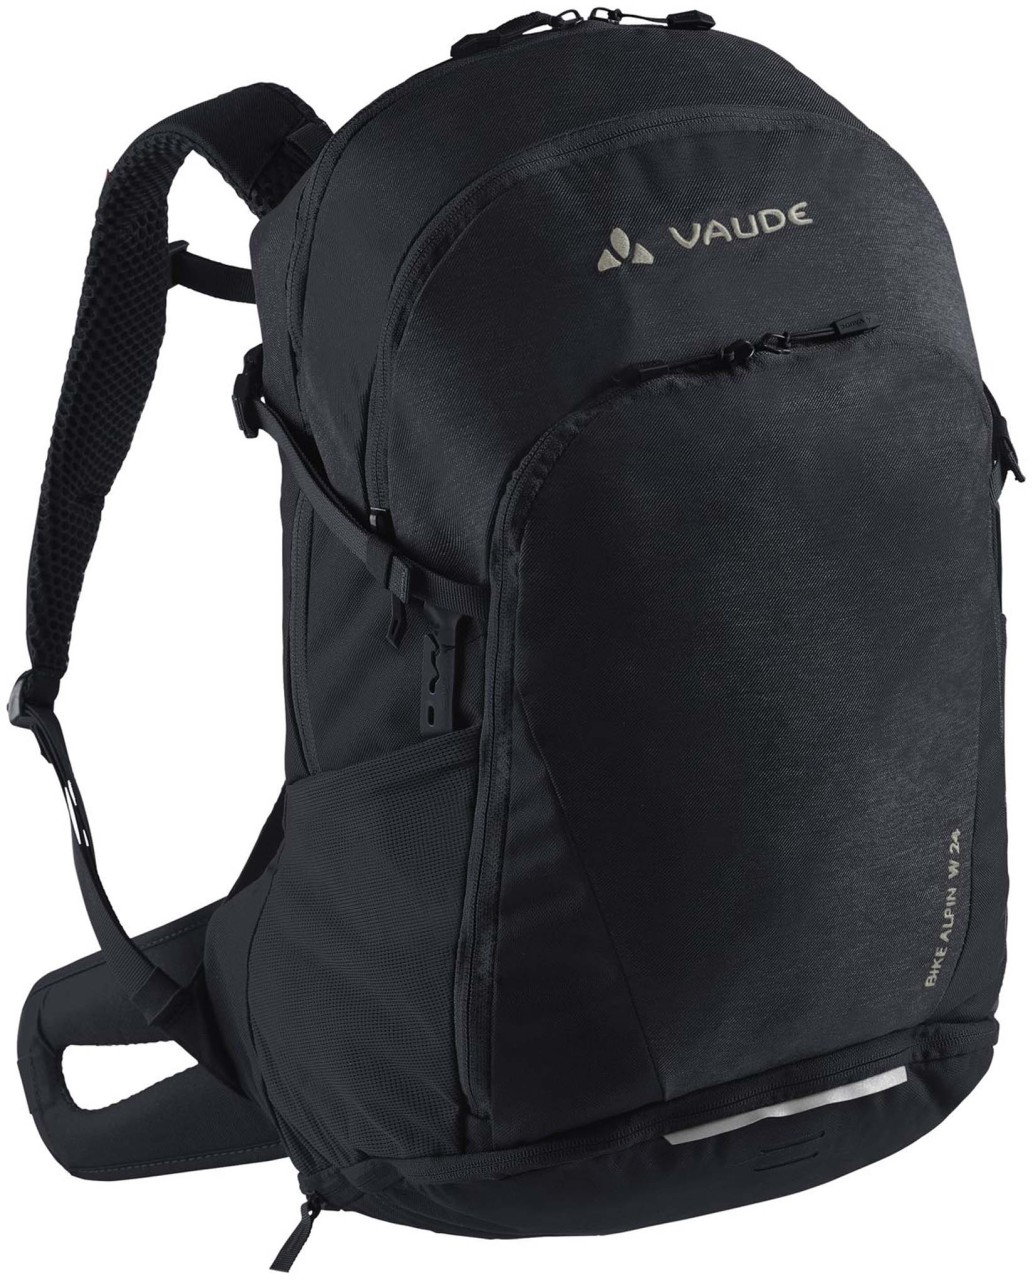 Vaude Where Bike Alpine 24 bike backpack, black